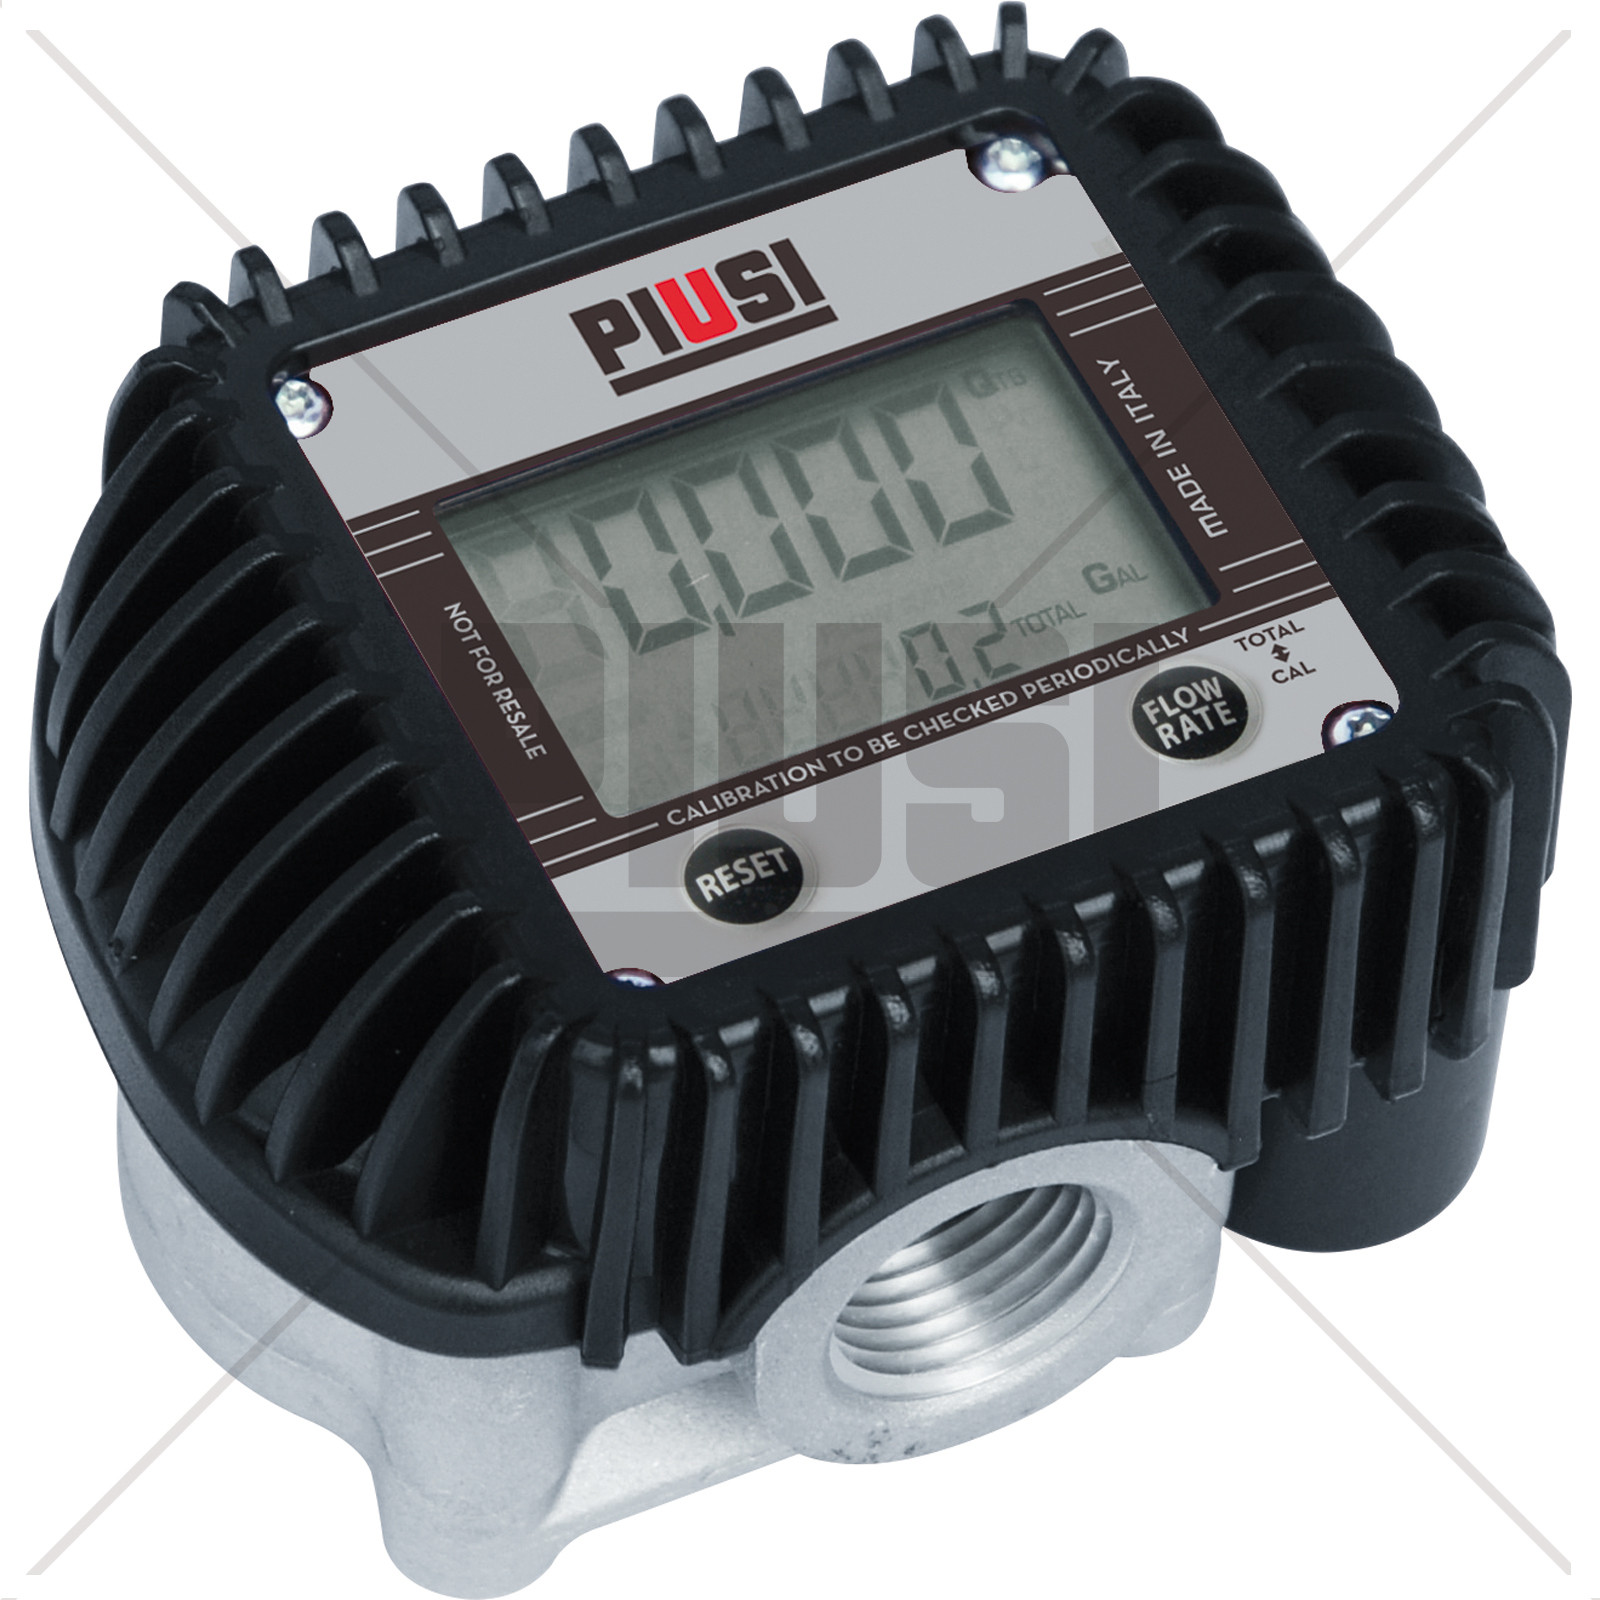 Đồng hồ đo dầu Piusi K400N (Copy 1)